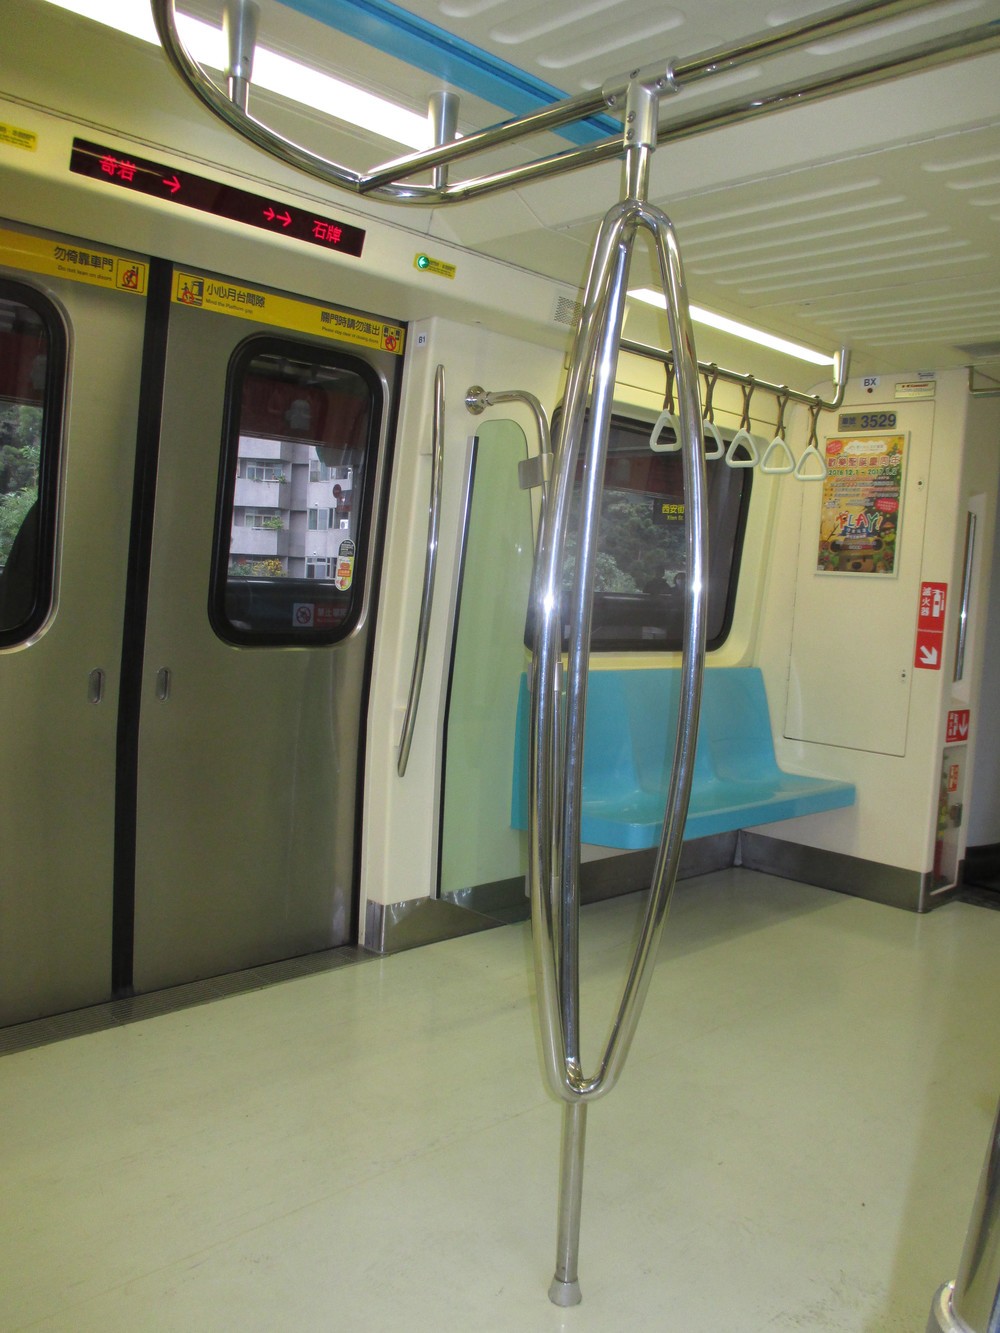 台北の地下鉄の車内。この手すりならつかまりやすいじゃないか